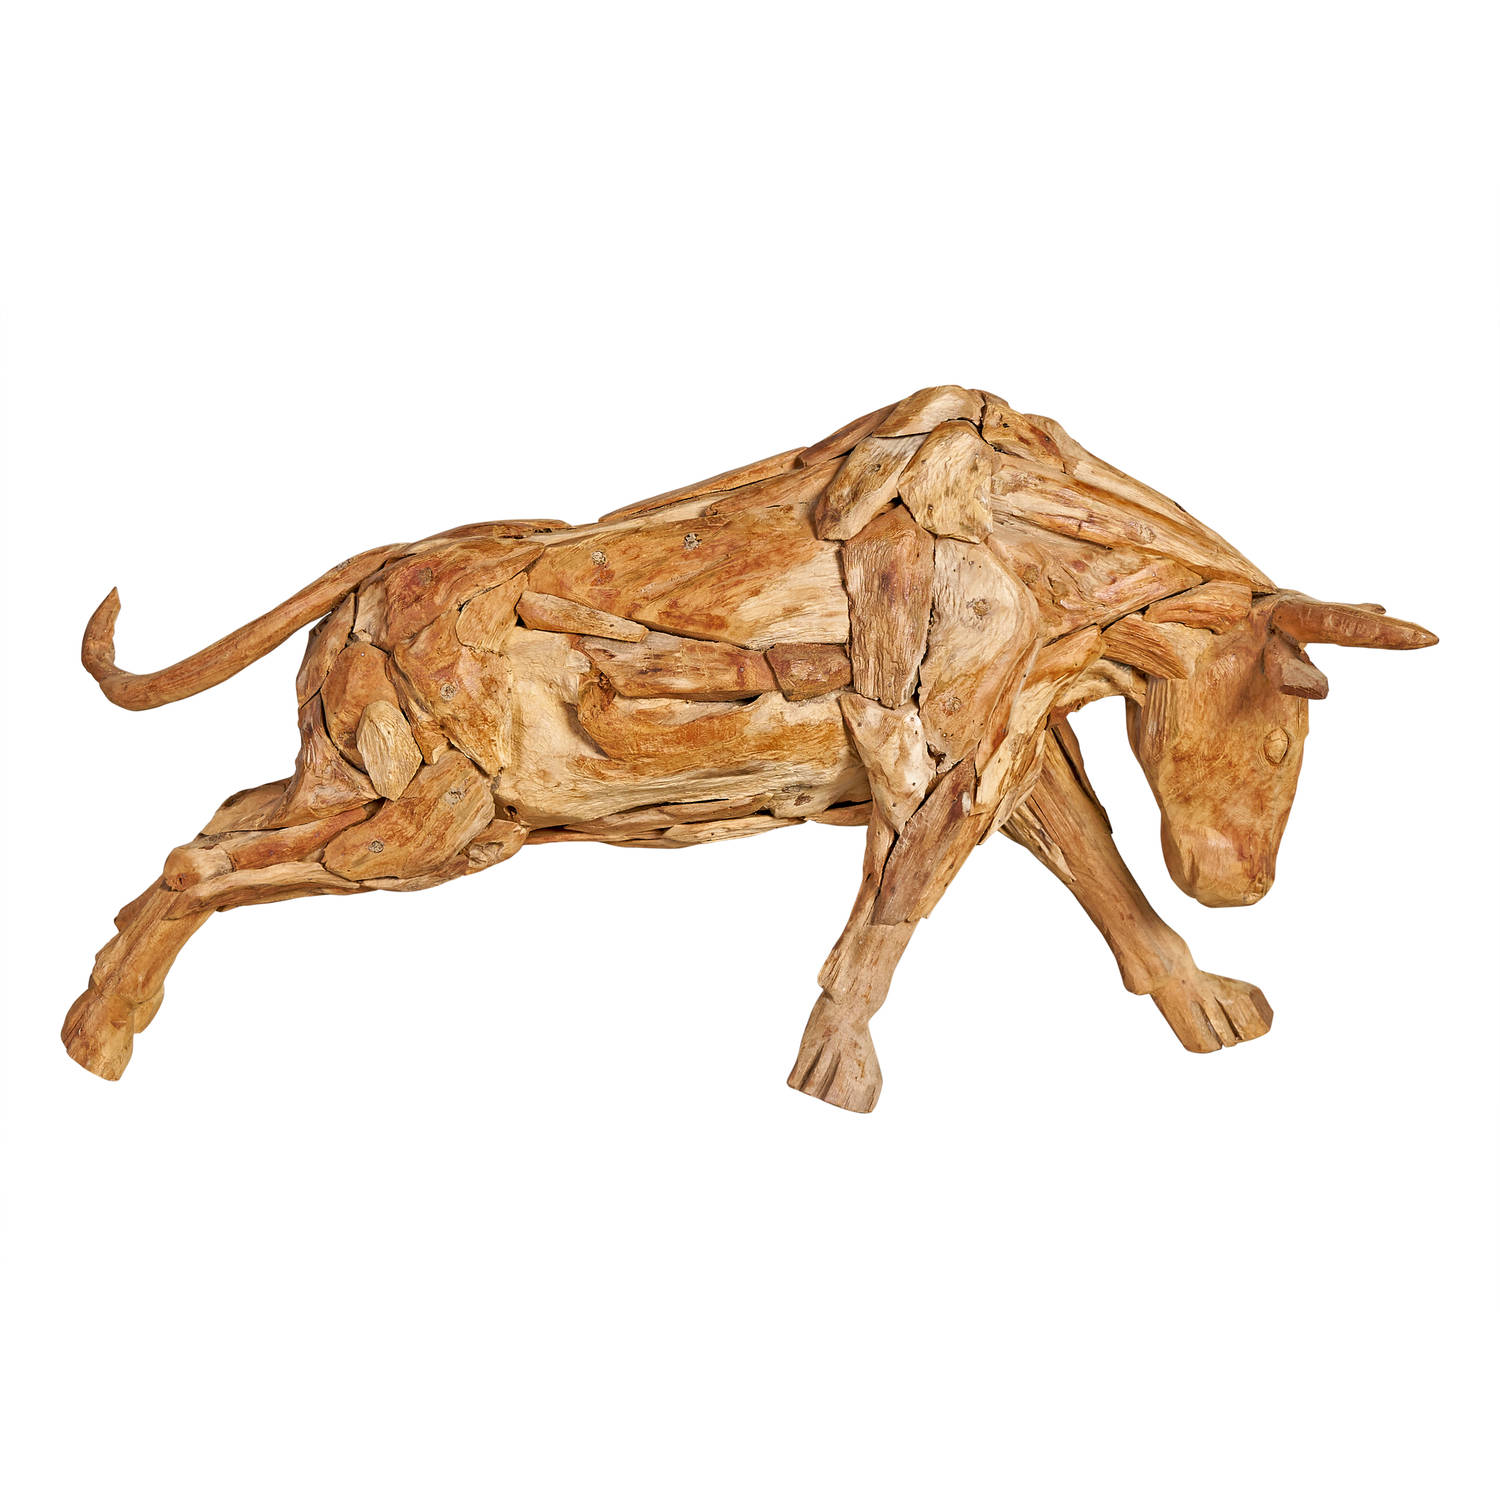 Decoratief standbeeld Bull - naturel/teakhout